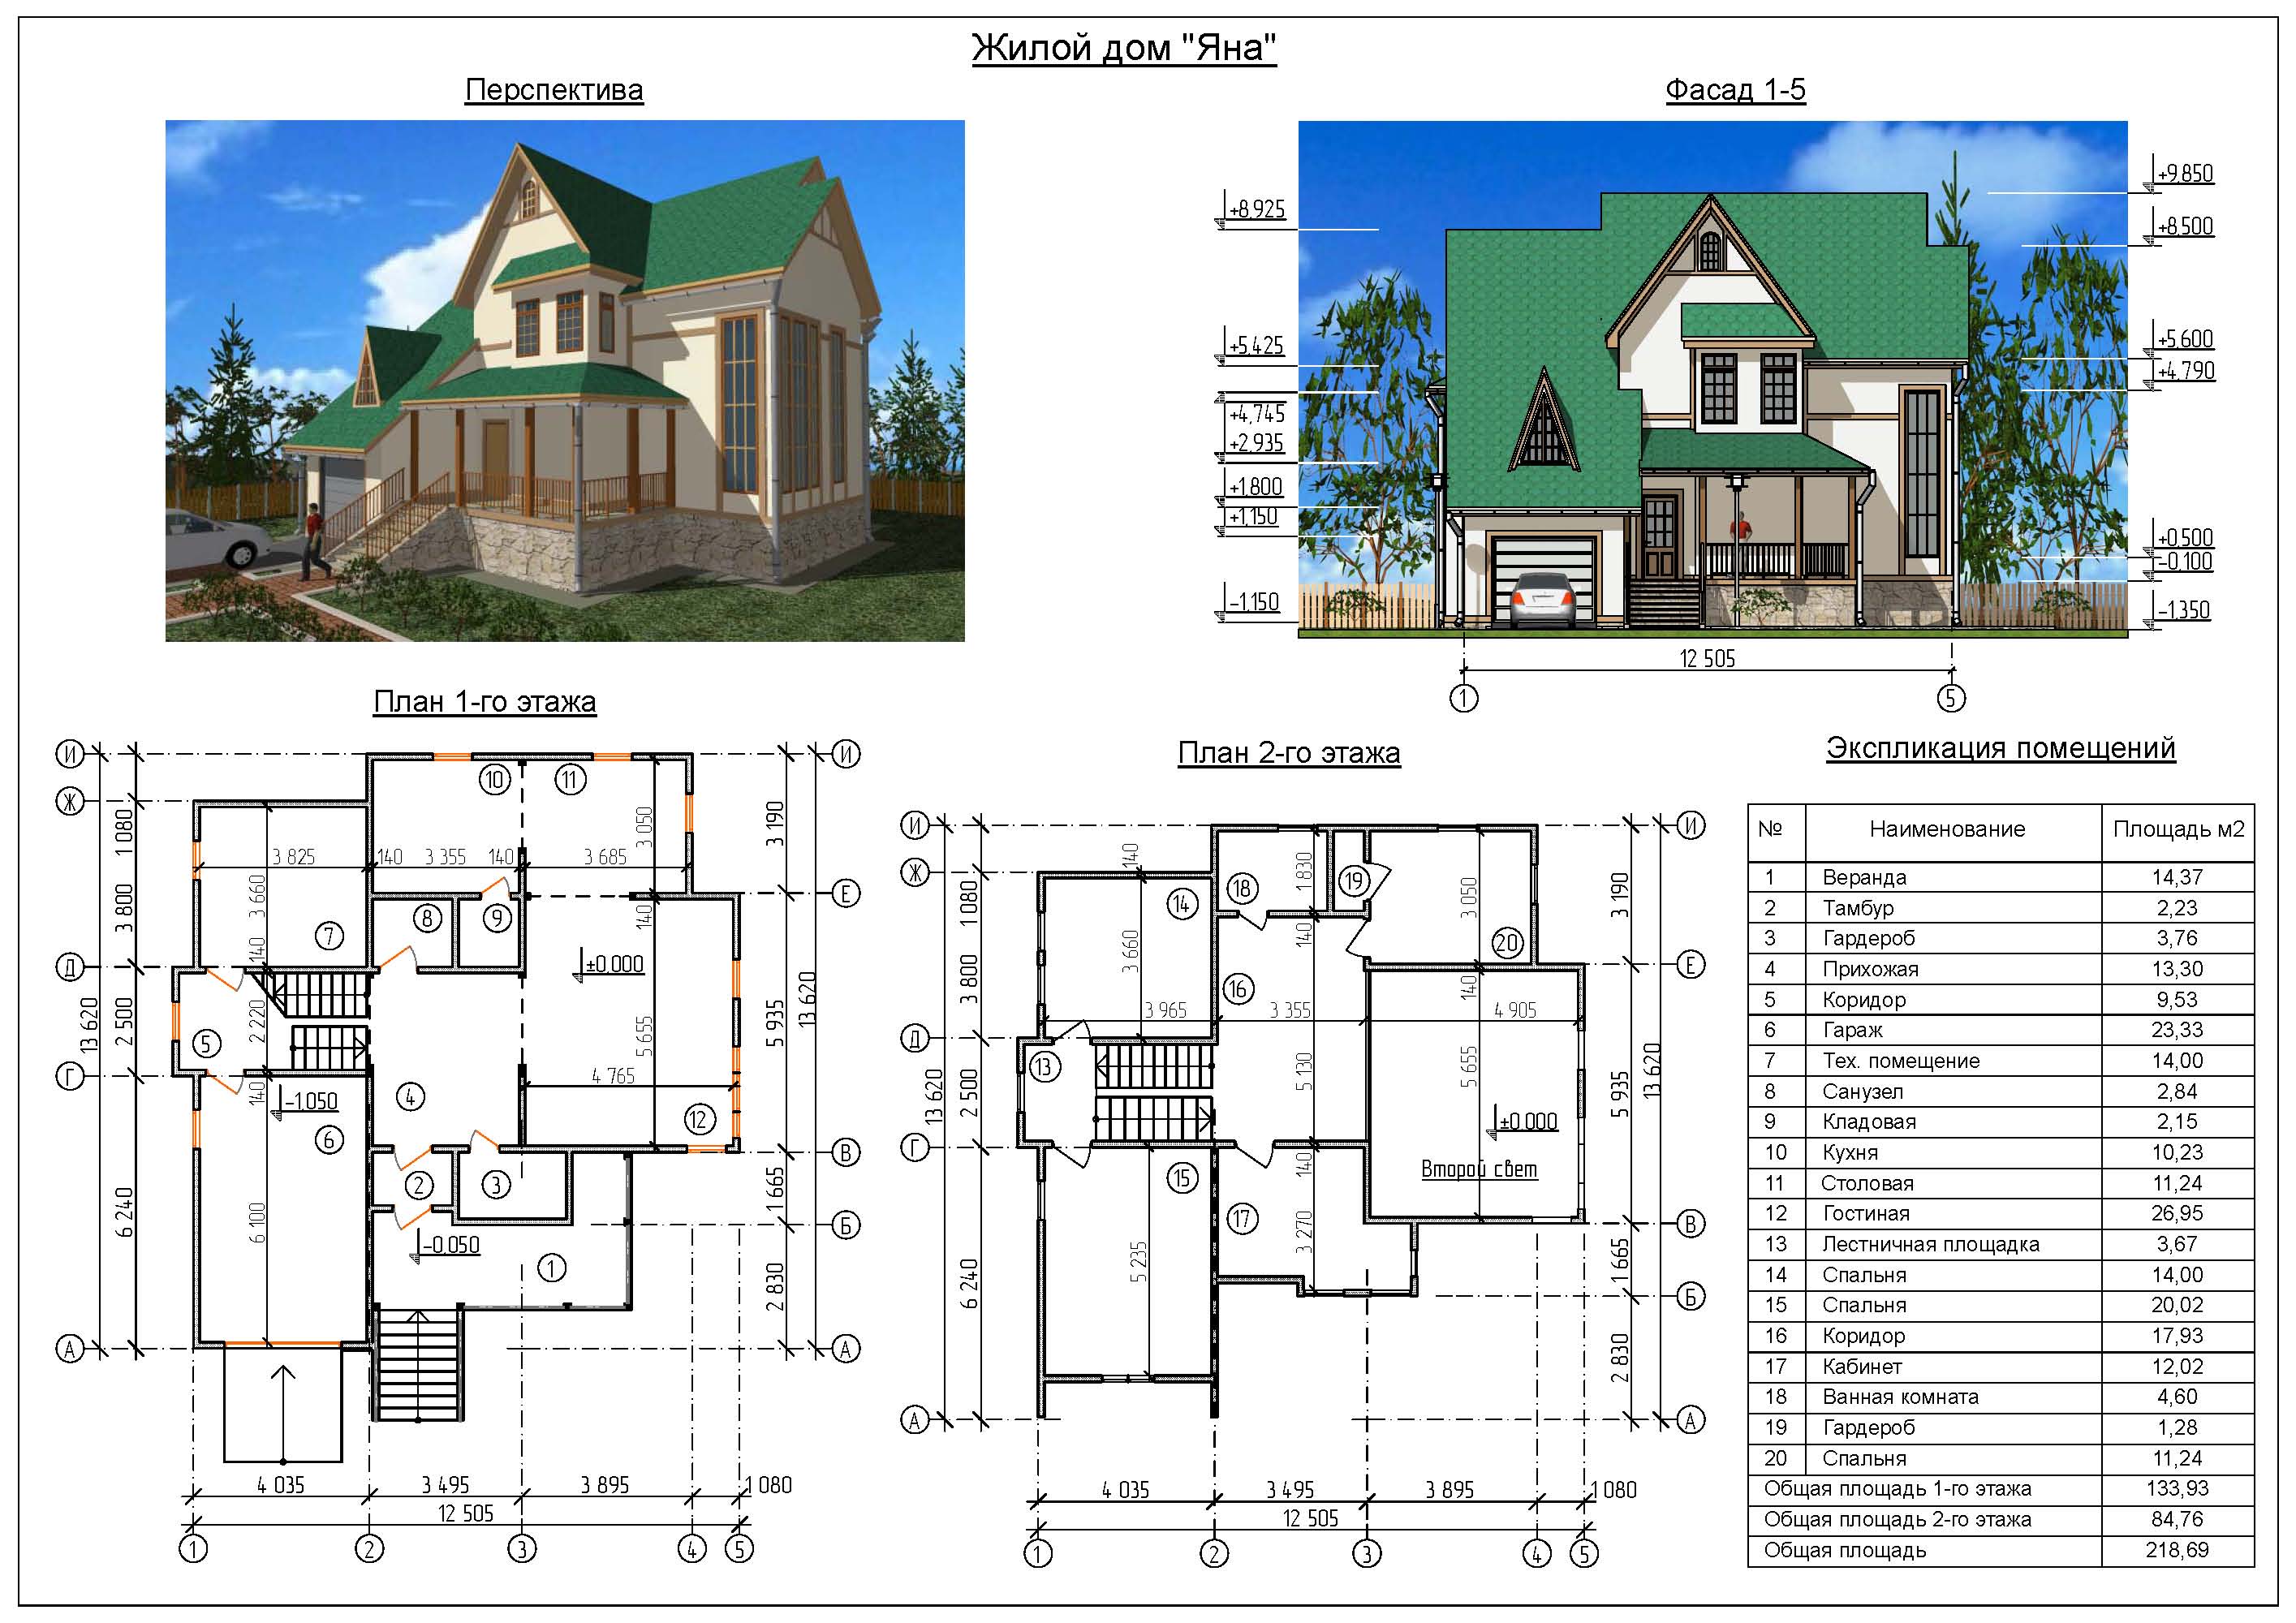 Проект дома чертеж. Коттедж план фасад. План дома чертеж с размерами. Двухэтажный дом с планом и фасадом. Проекты коттеджей с планами и фасадами.